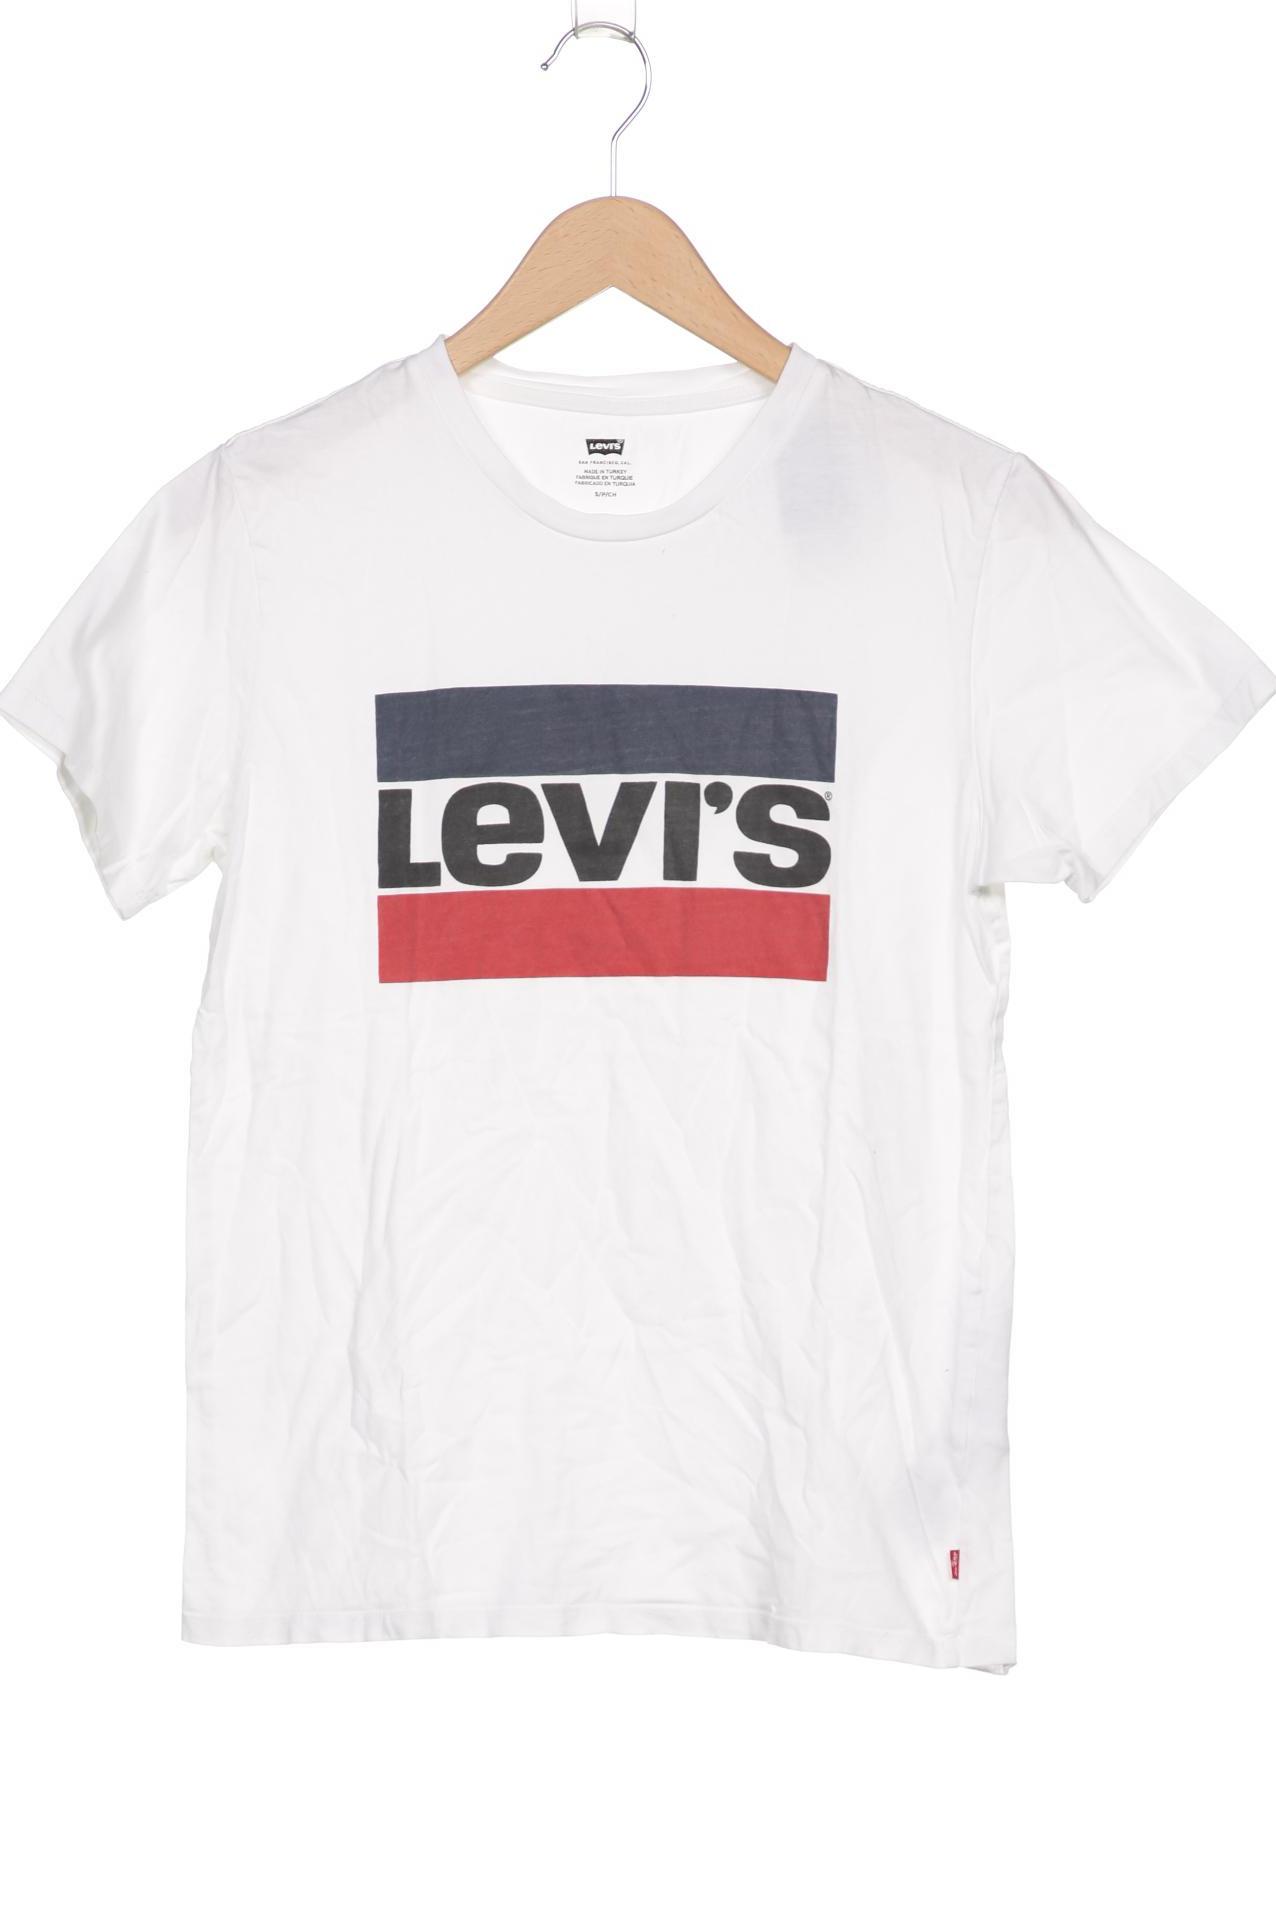 Levis Herren T-Shirt, weiß von Levis